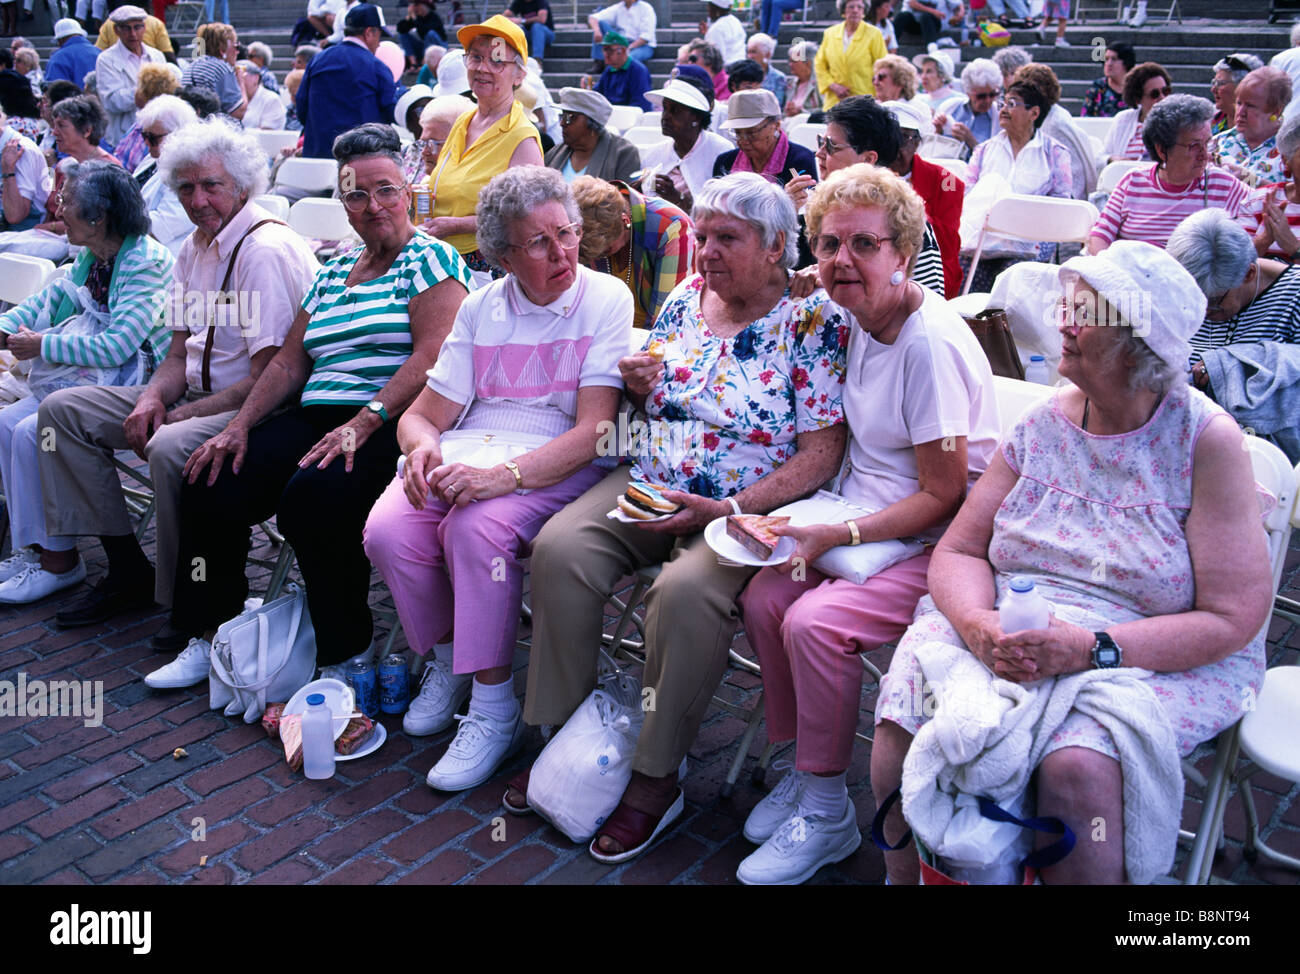 Senior citizen event, City Hall Plaza, Boston, Massachusetts Stock Photo